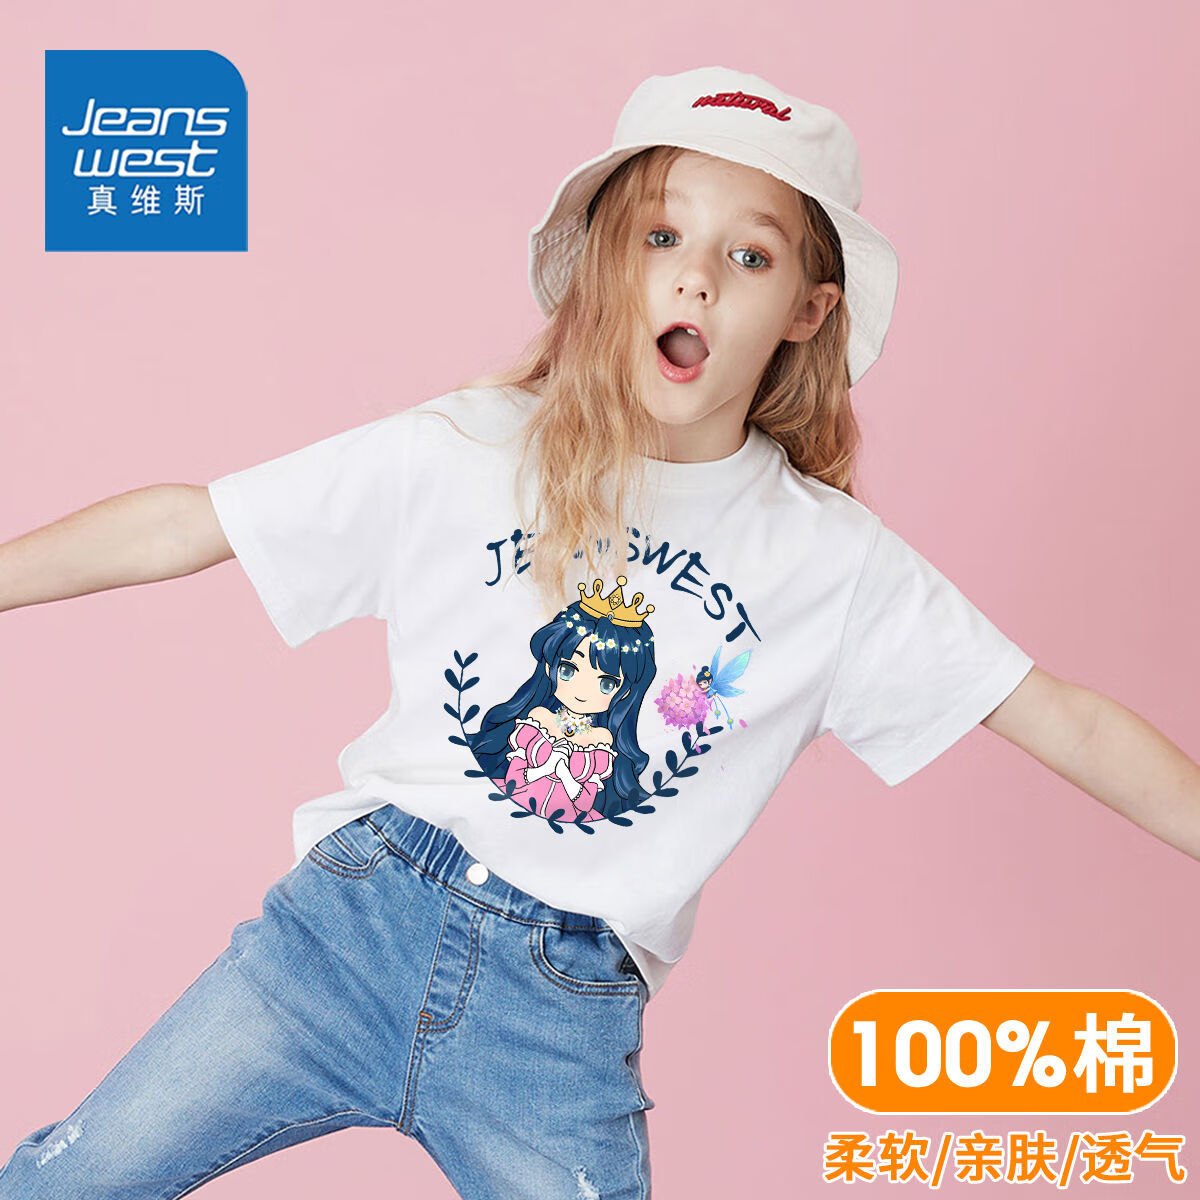 微信京东小程序:真维斯 女童夏季纯棉短袖T恤 任选3件 39.73元包邮+0.1元购券